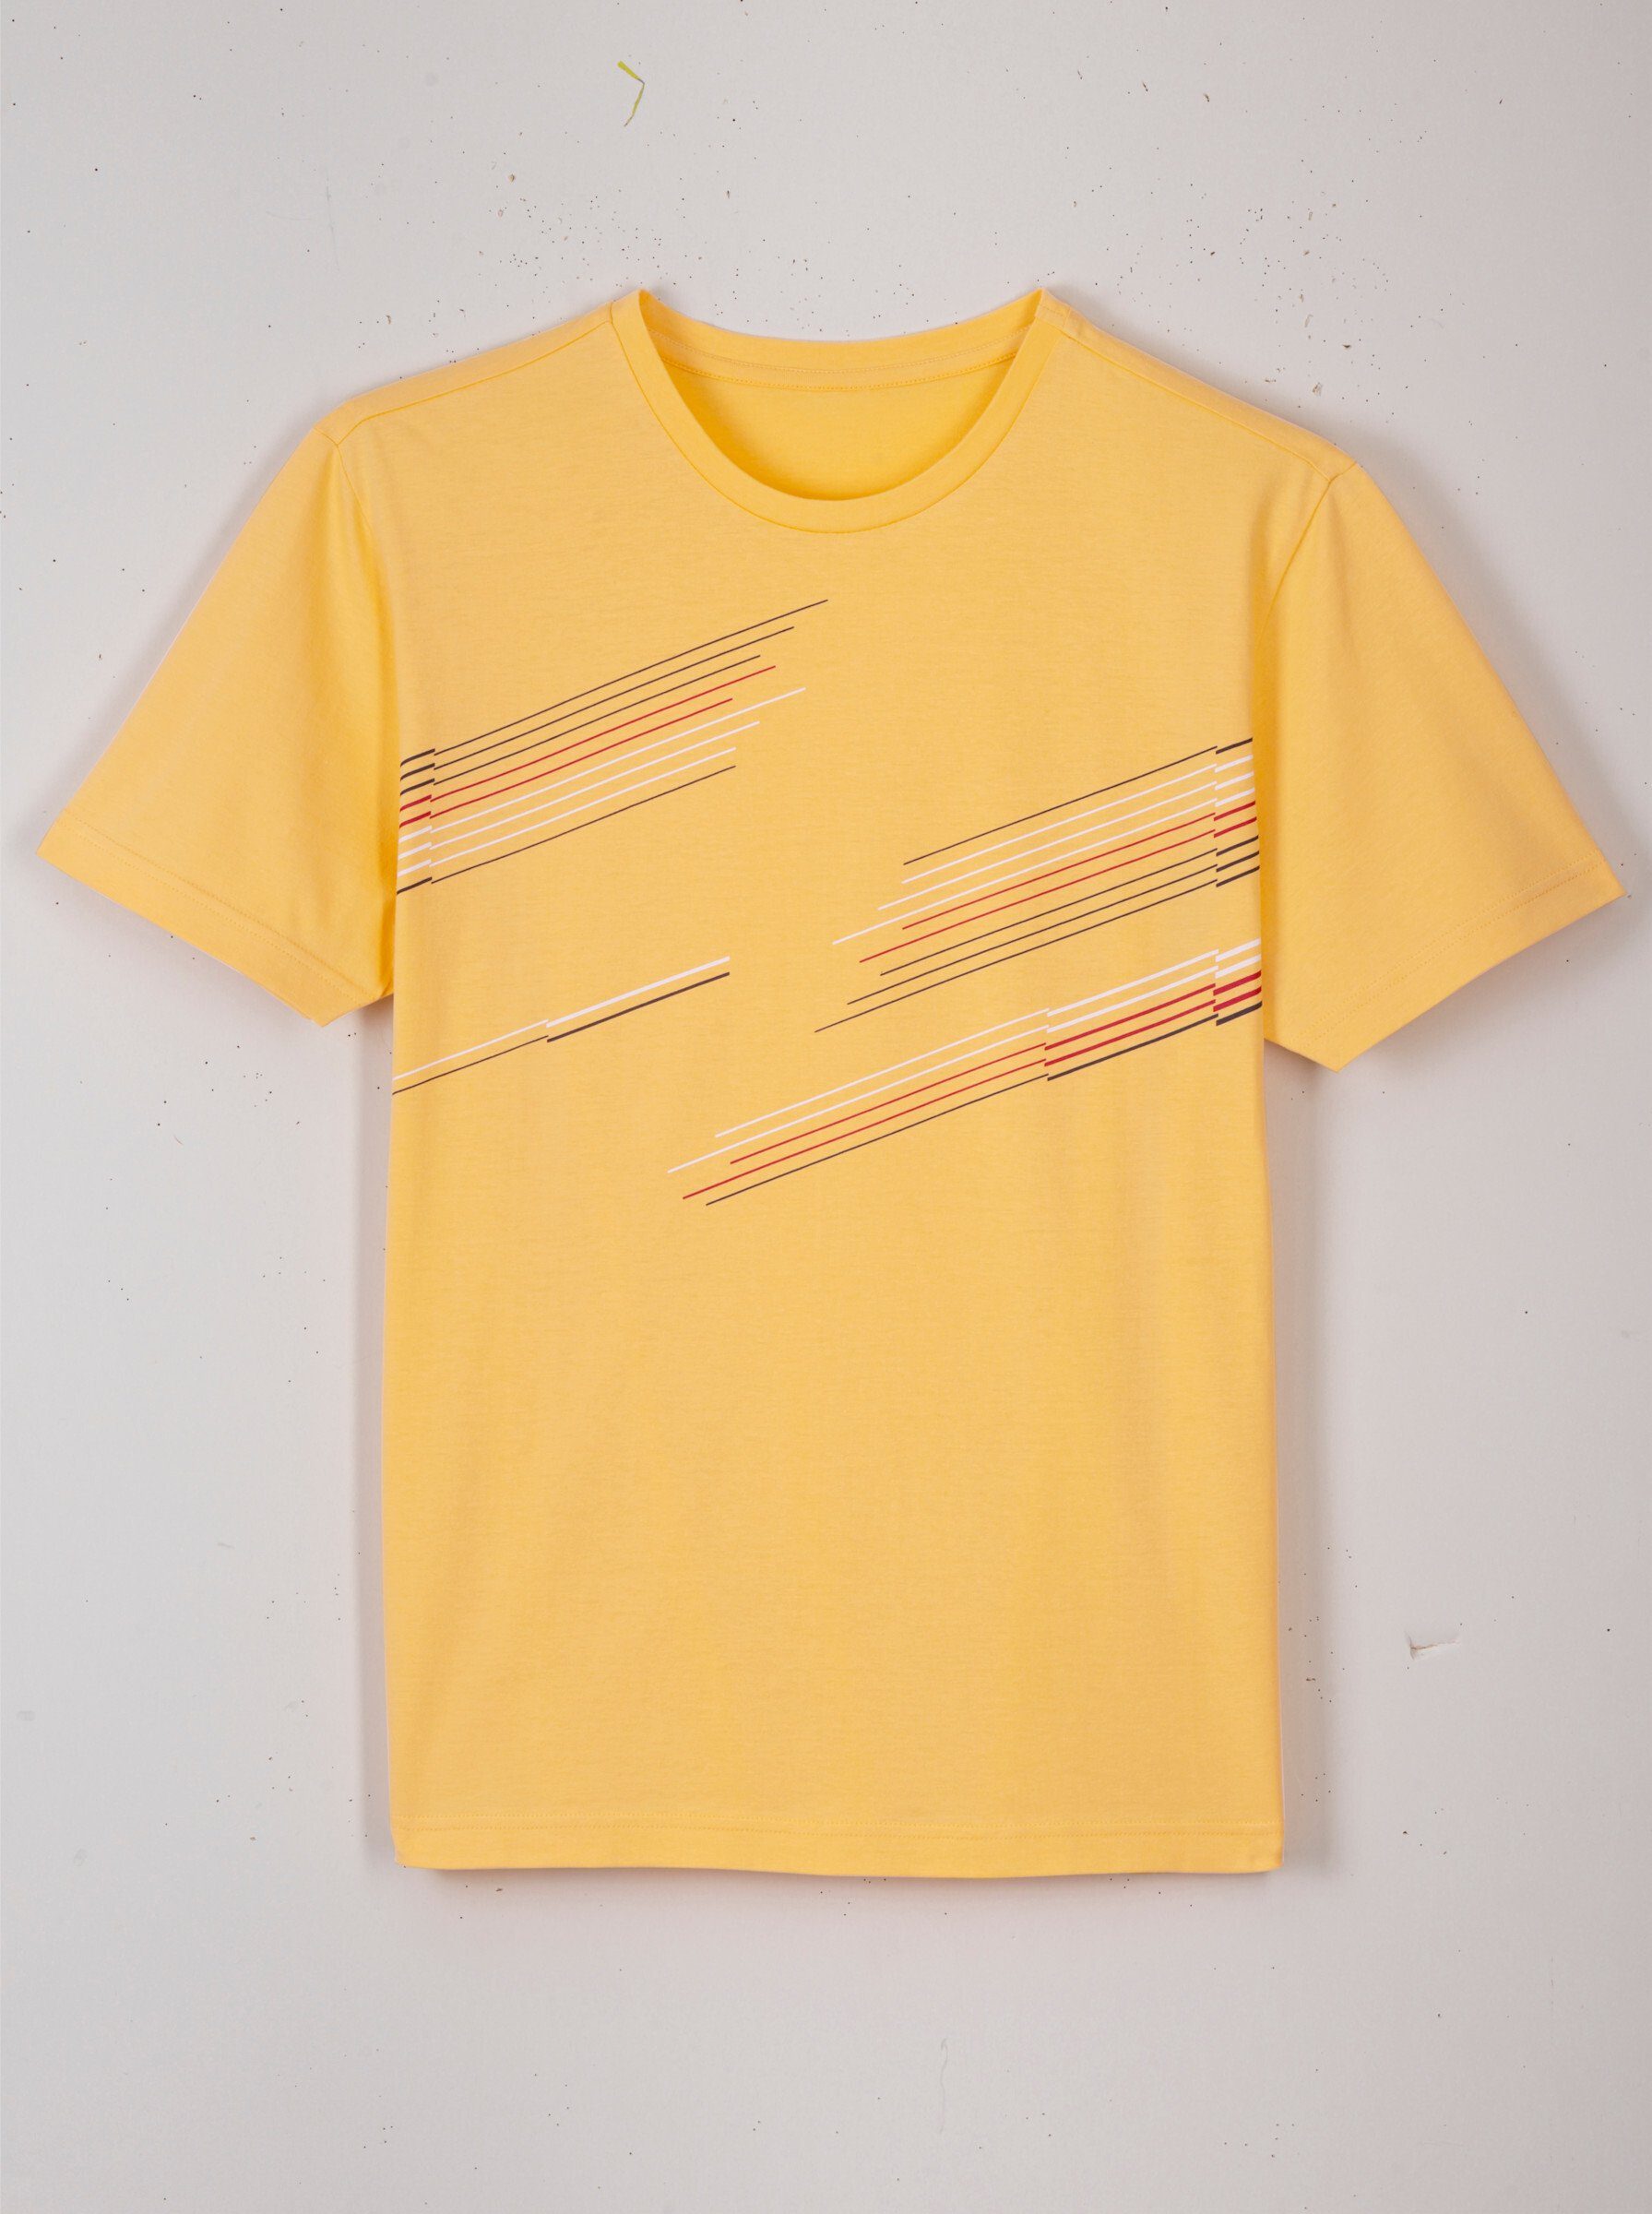 T-Shirt Sieh gelb an!